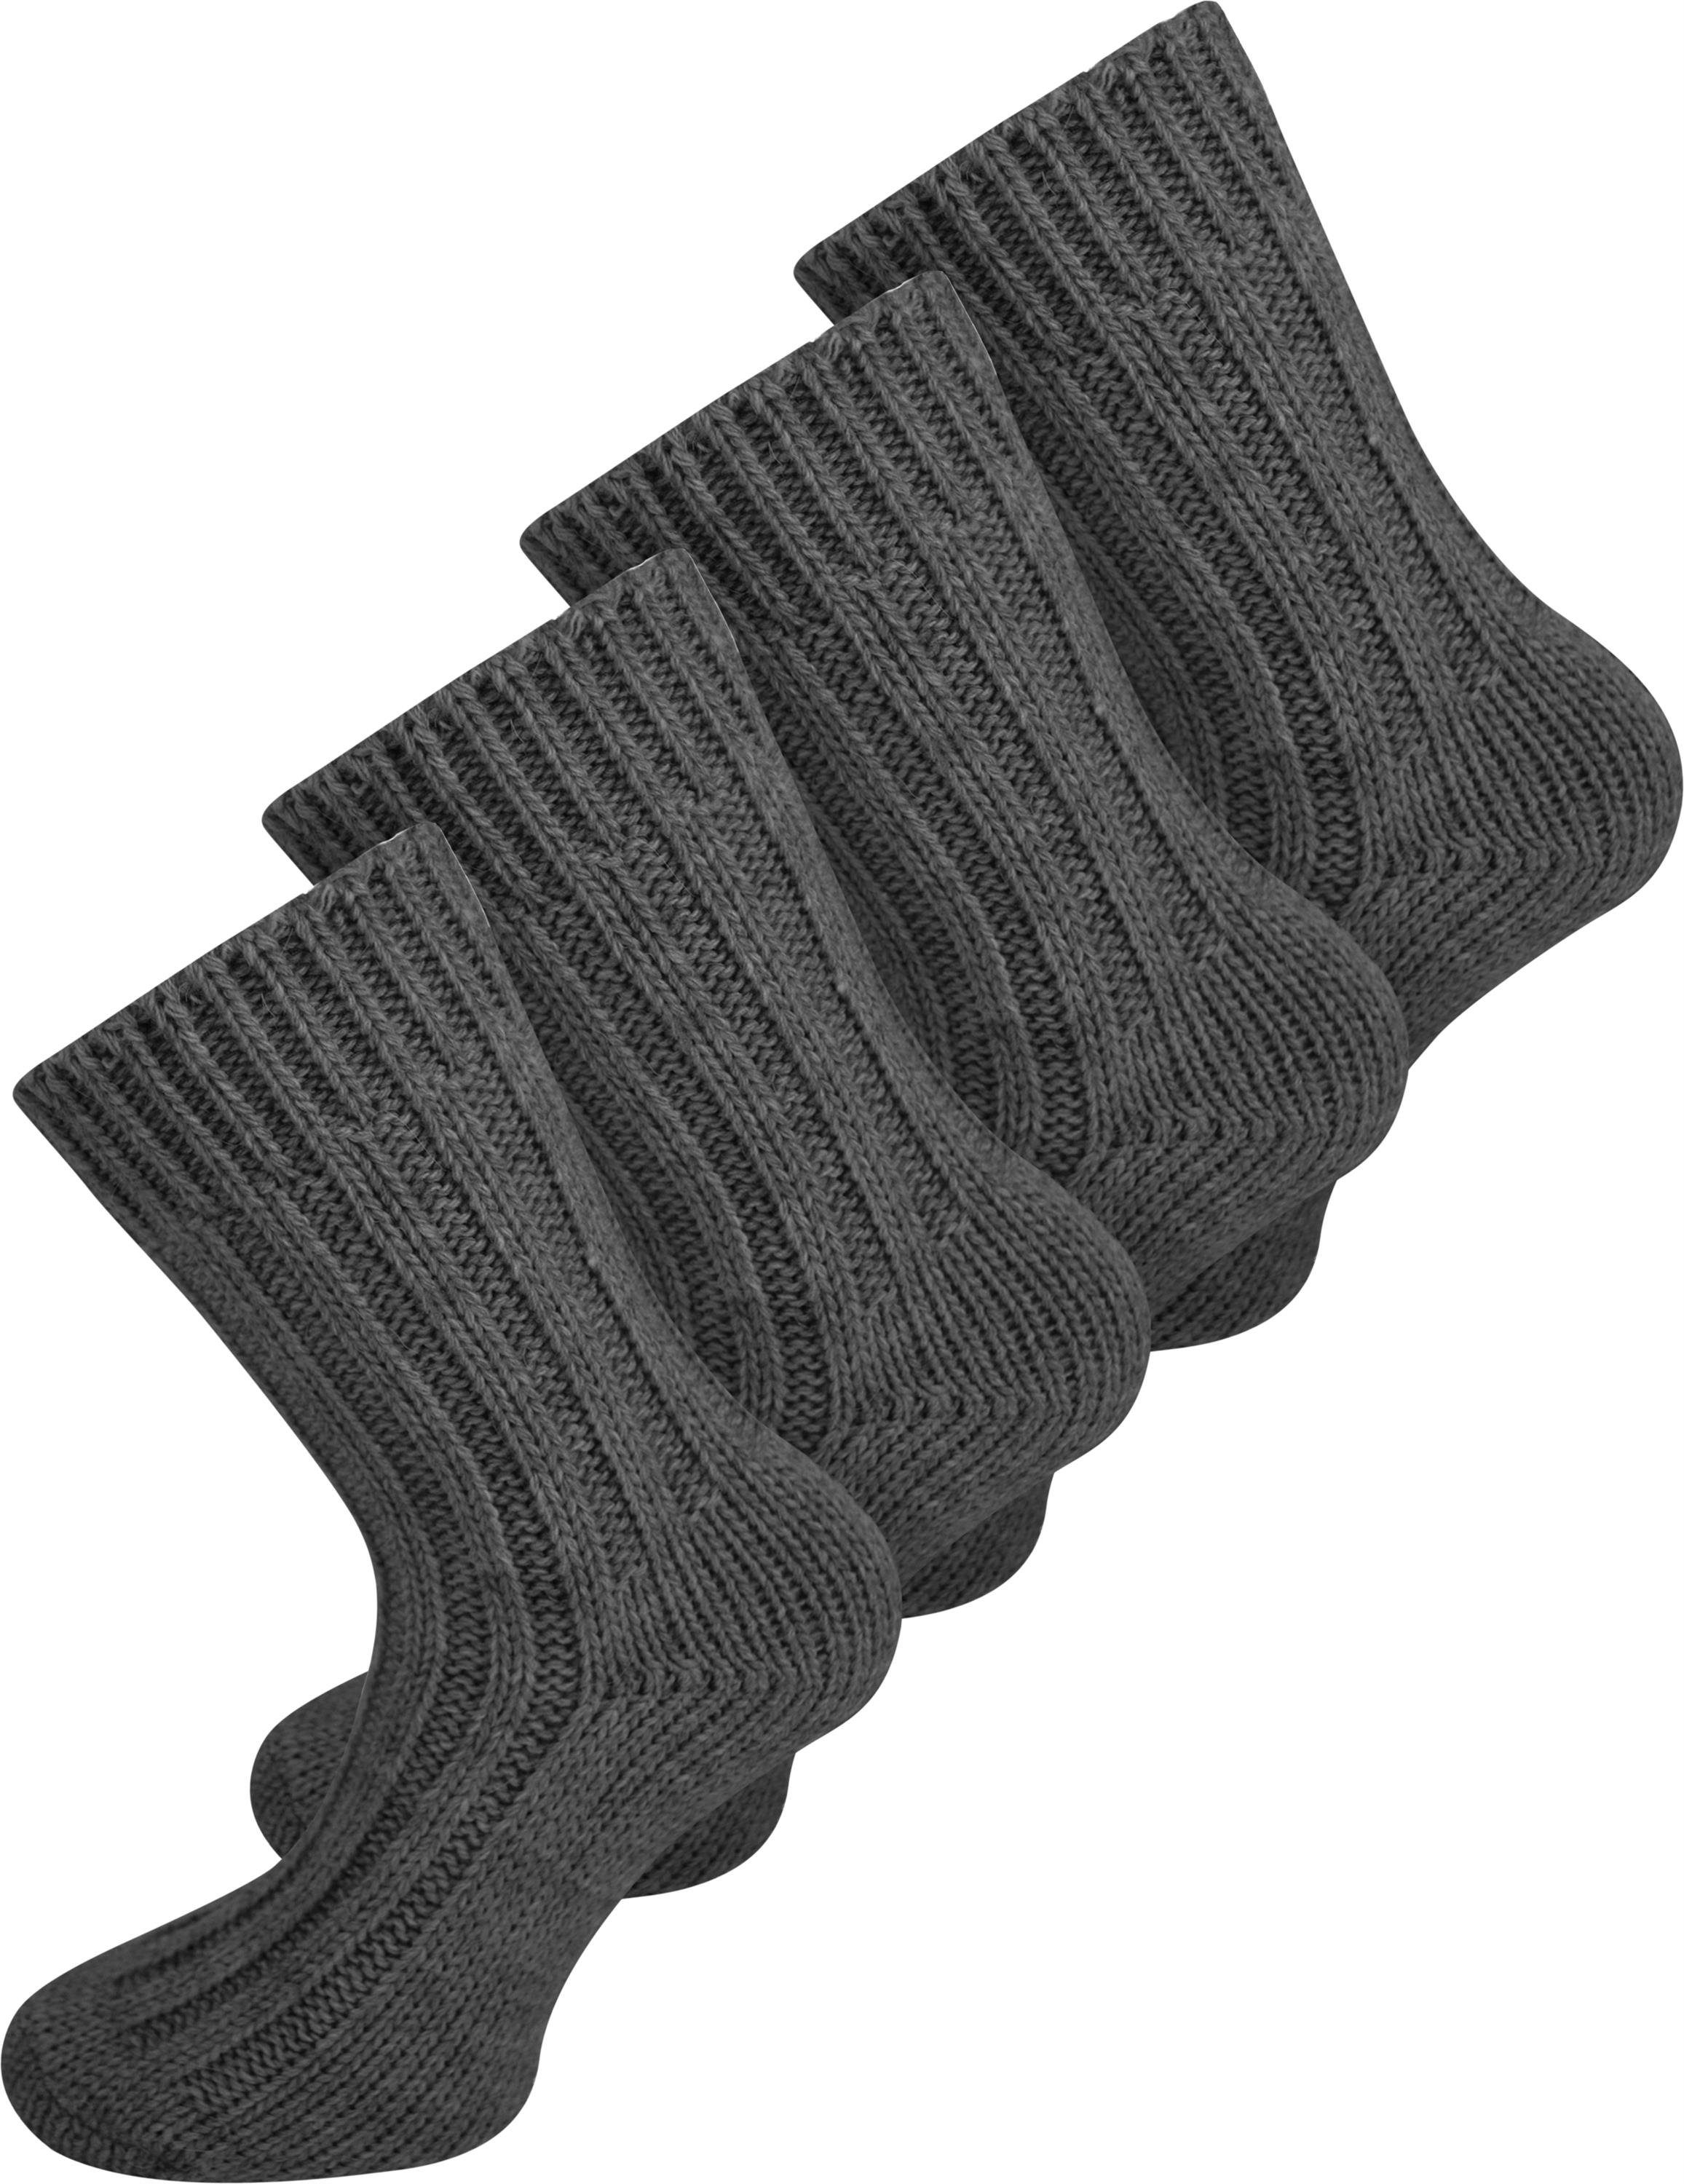 normani Thermosocken 4 Paar Alpaka-Socken (4 Paar) hochwertige Alpaka-Wolle Anthrazit